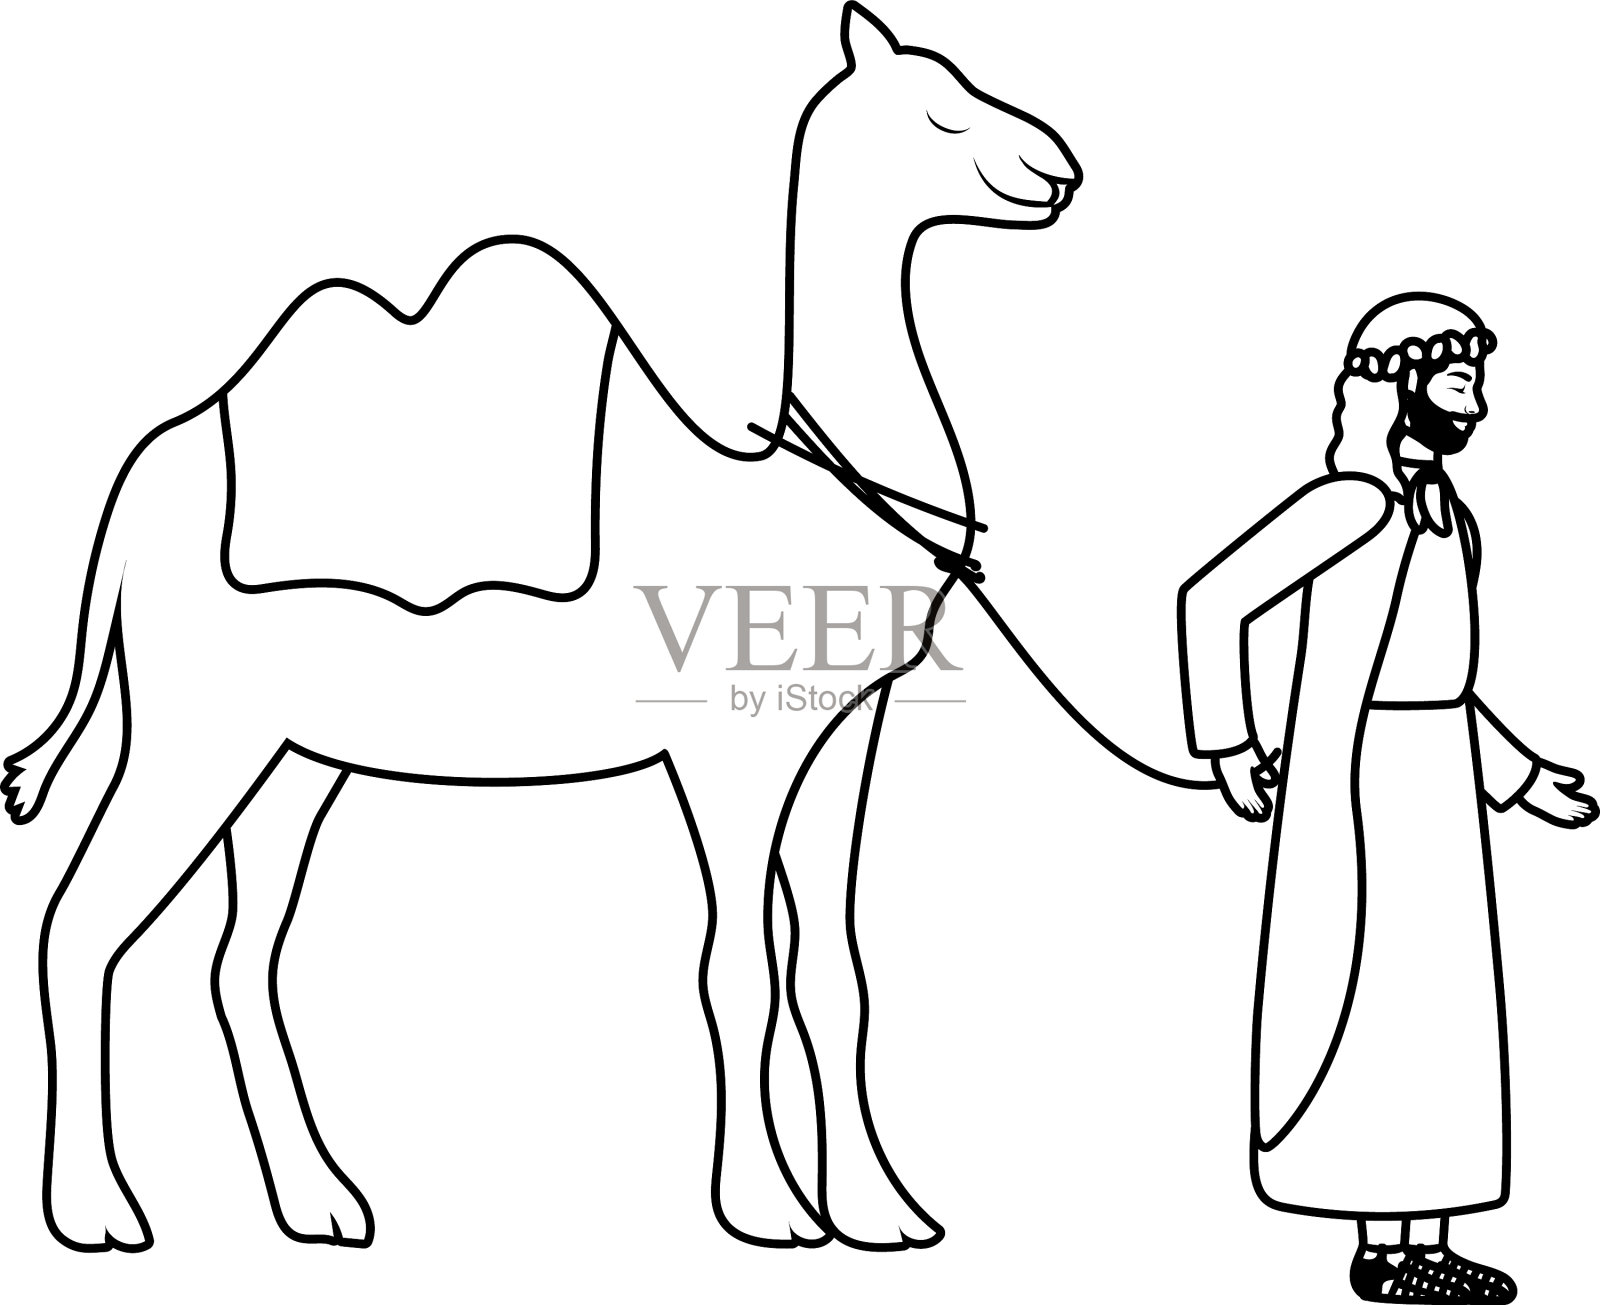 圣约瑟夫骆驼马槽人物插画图片素材